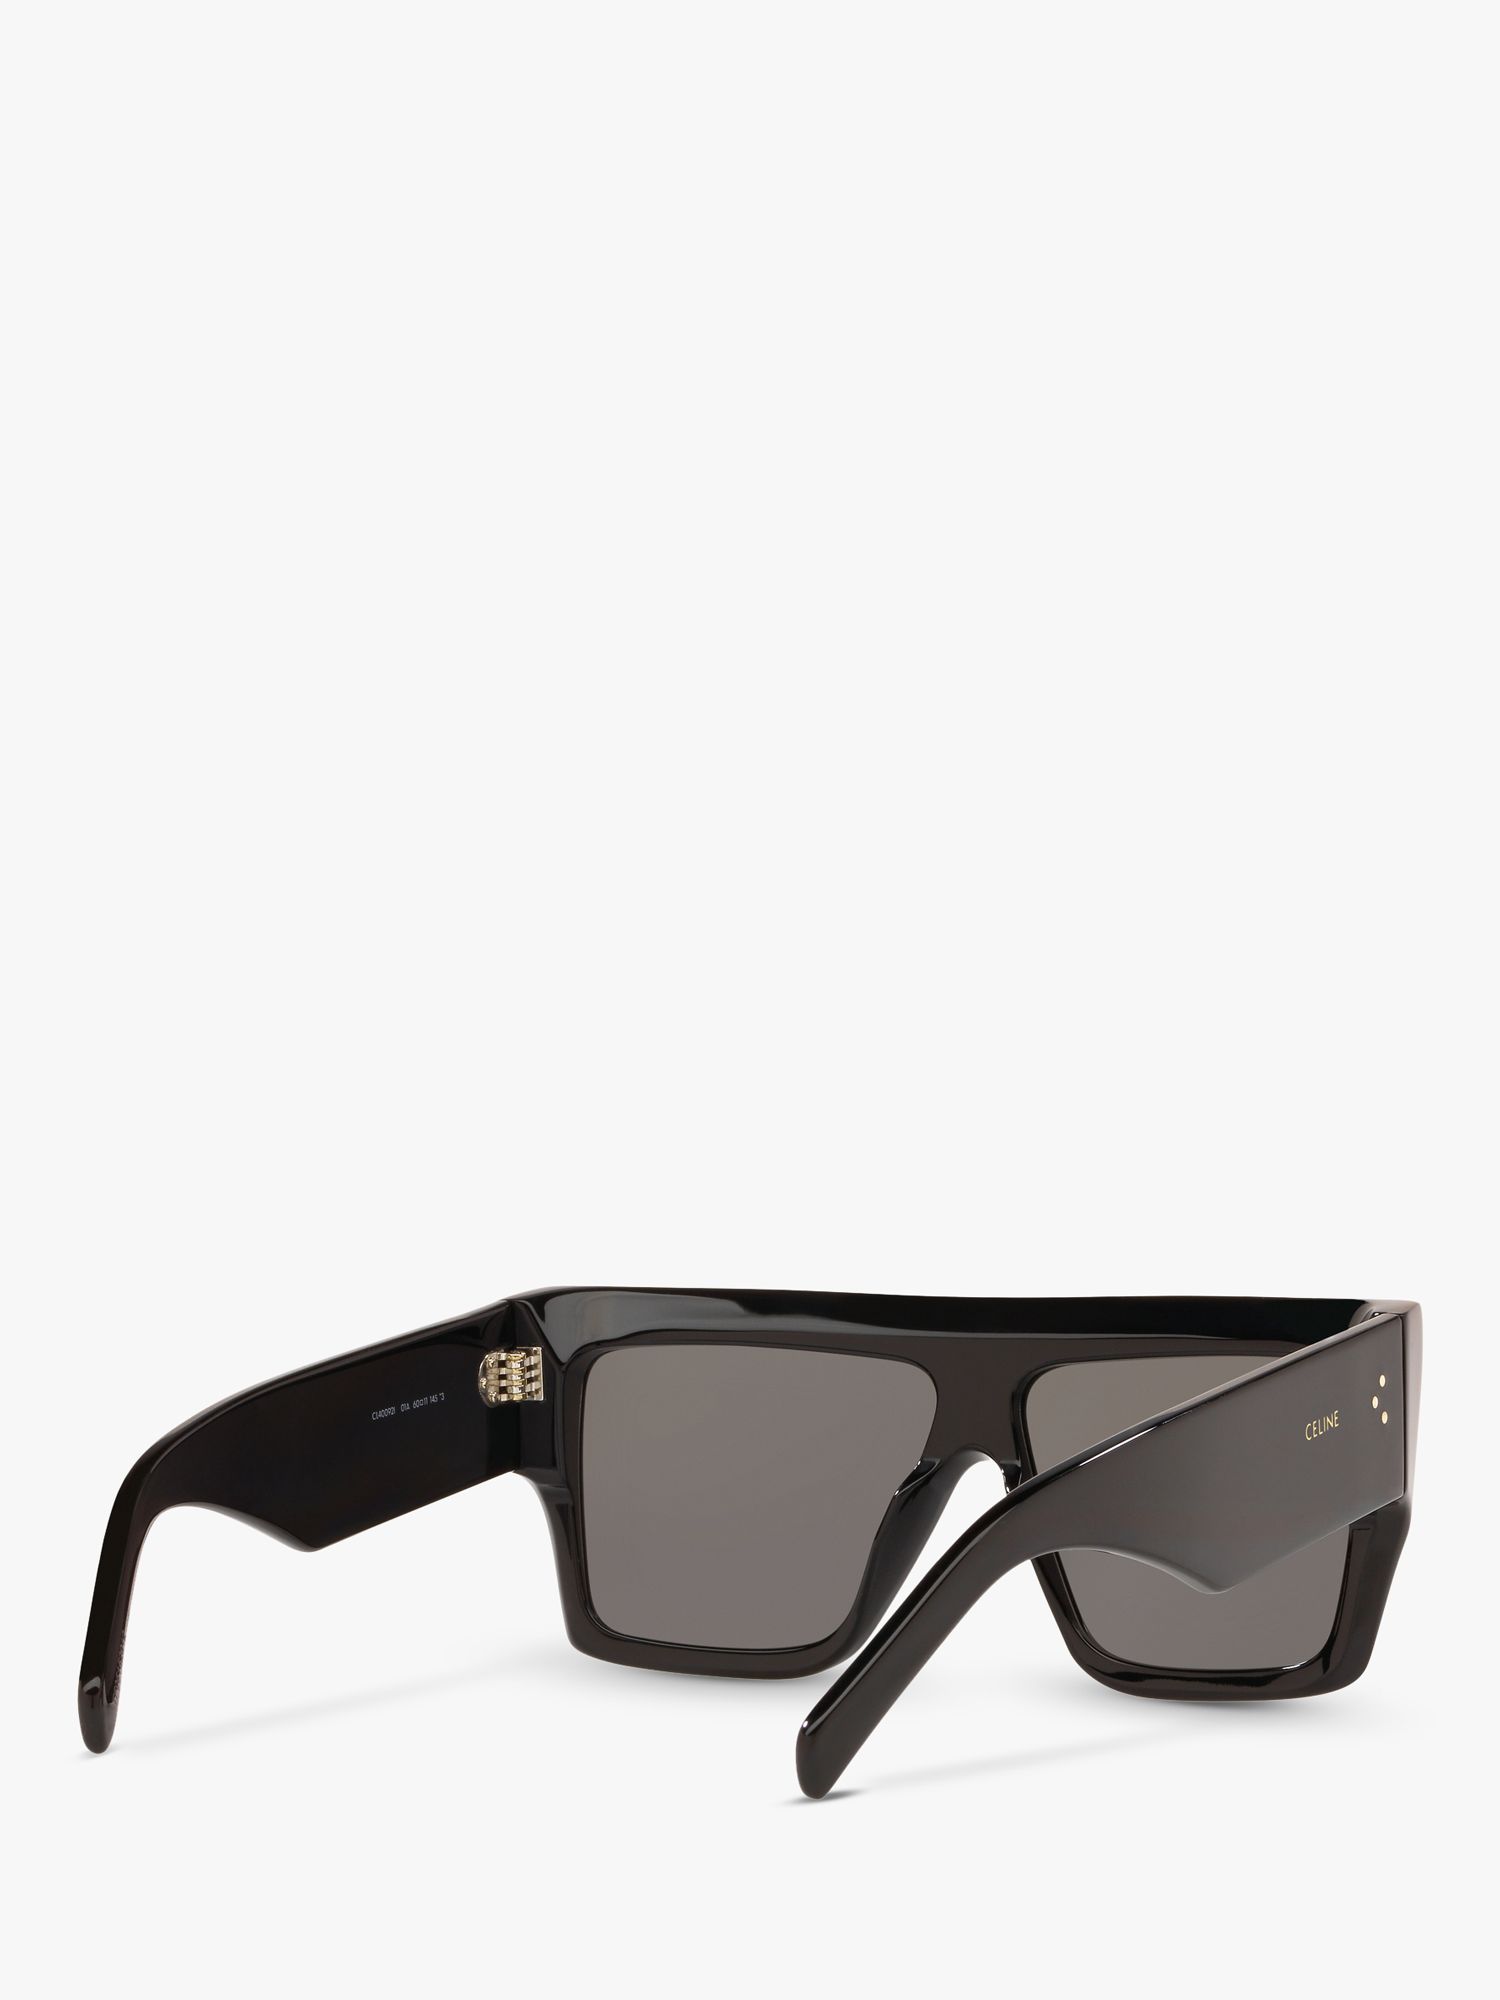 Celine CL000240 Women's Square Sunglasses, Shiny Black/Grey at John ...